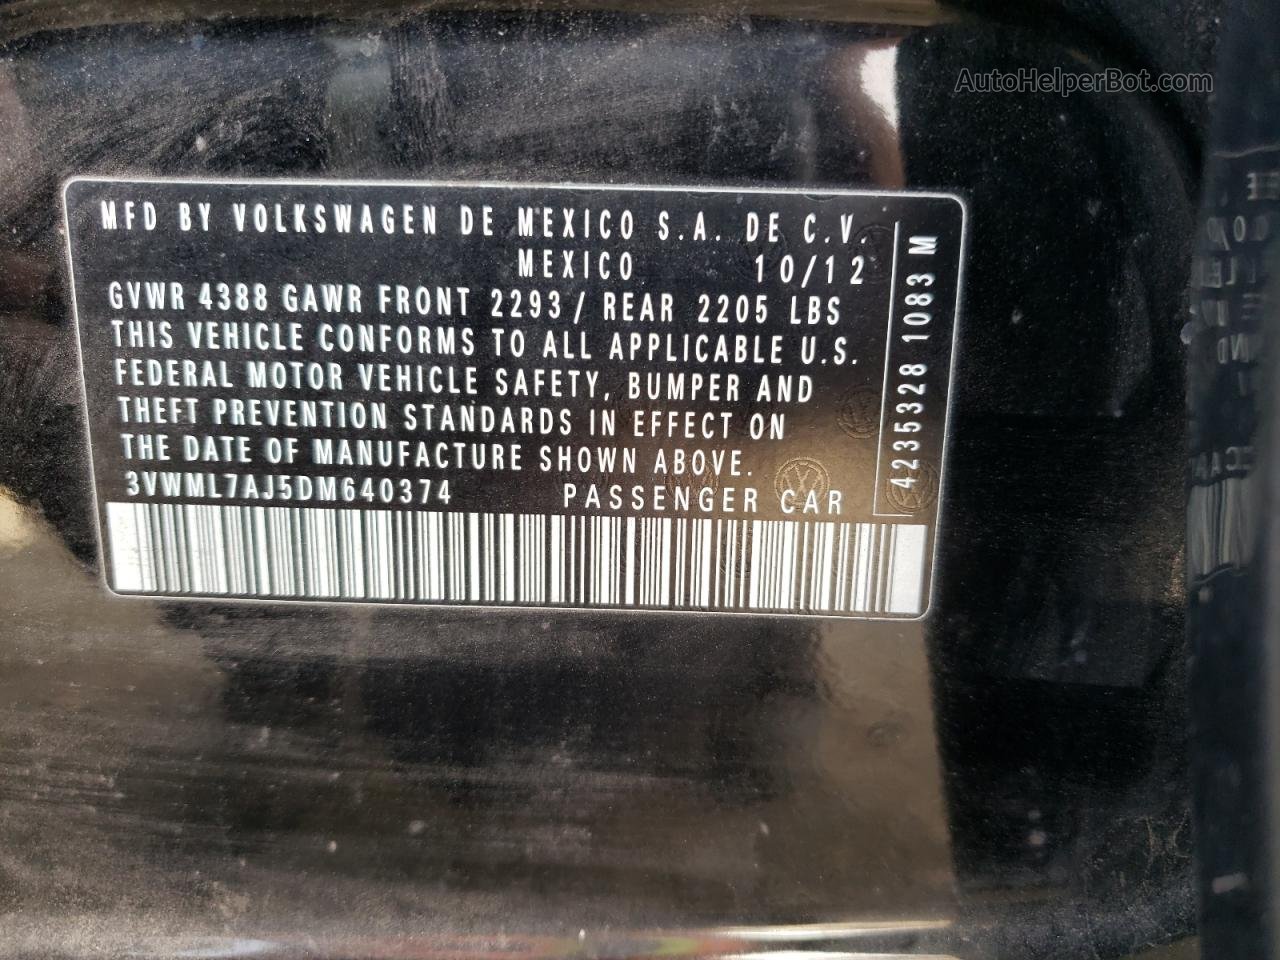 2013 Volkswagen Jetta Tdi Black vin: 3VWML7AJ5DM640374